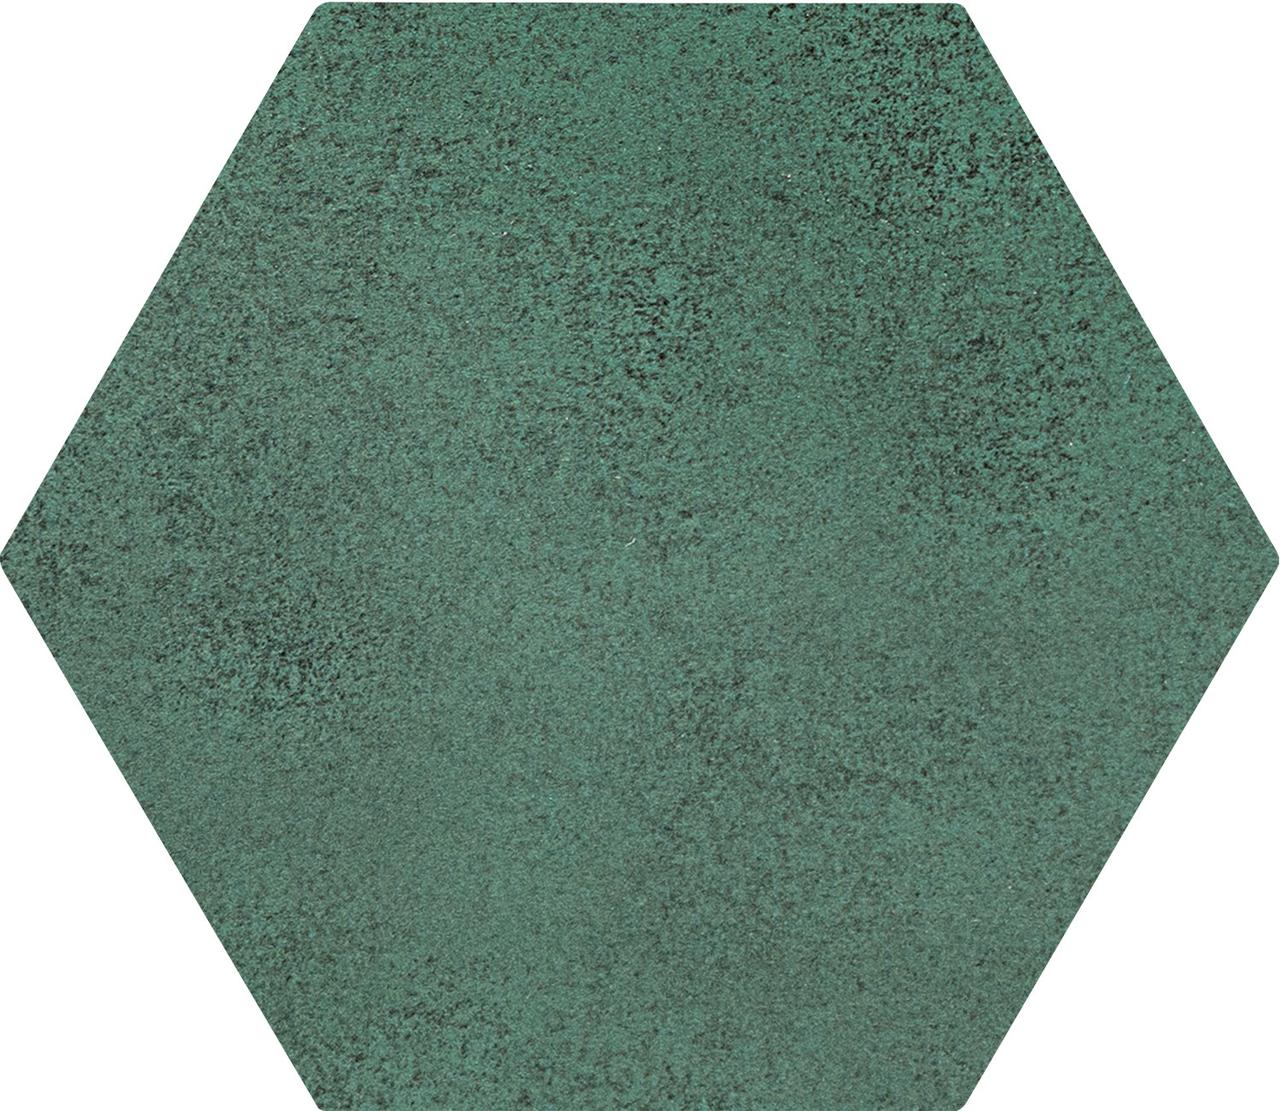 Burano green hex 11*12.5